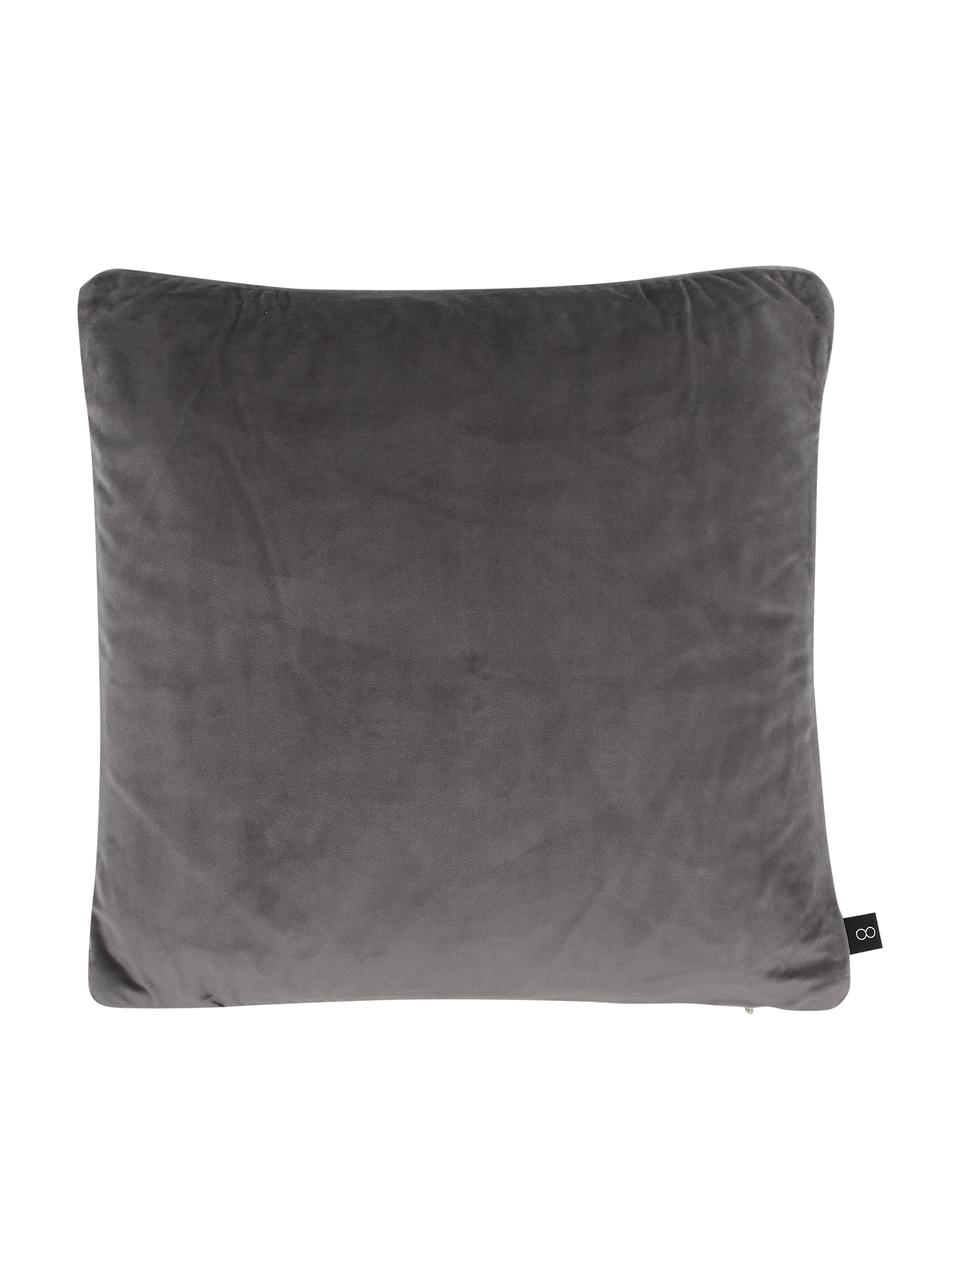 Poszewka na poduszkę z aksamitu Nuoro, 100% aksamit poliestrowy, Szary, brązowy, czarny, S 50 x D 50 cm